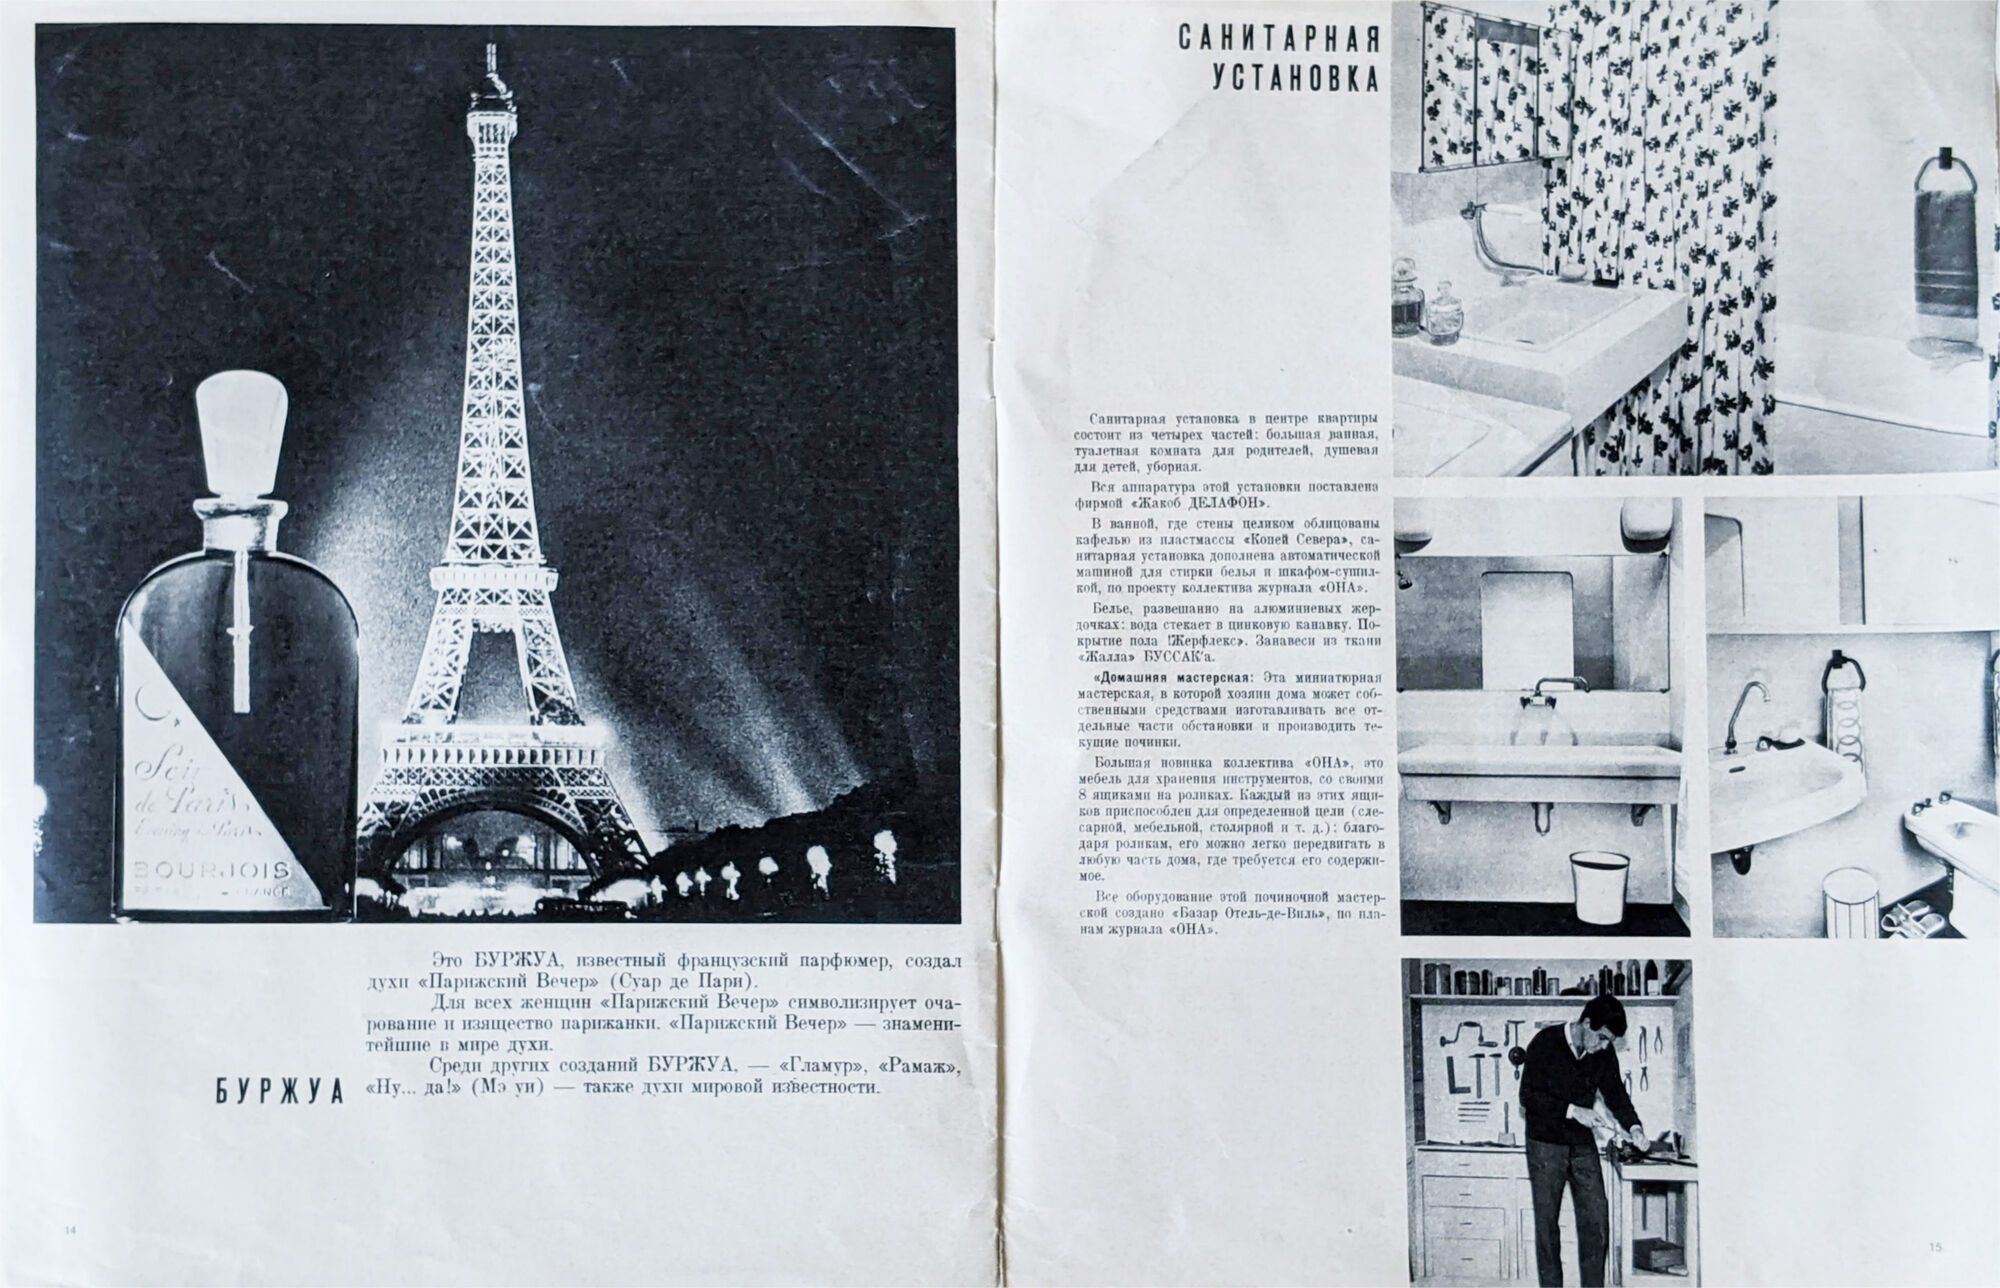 Як виглядав перший французький жіночий журнал в СРСР: фото